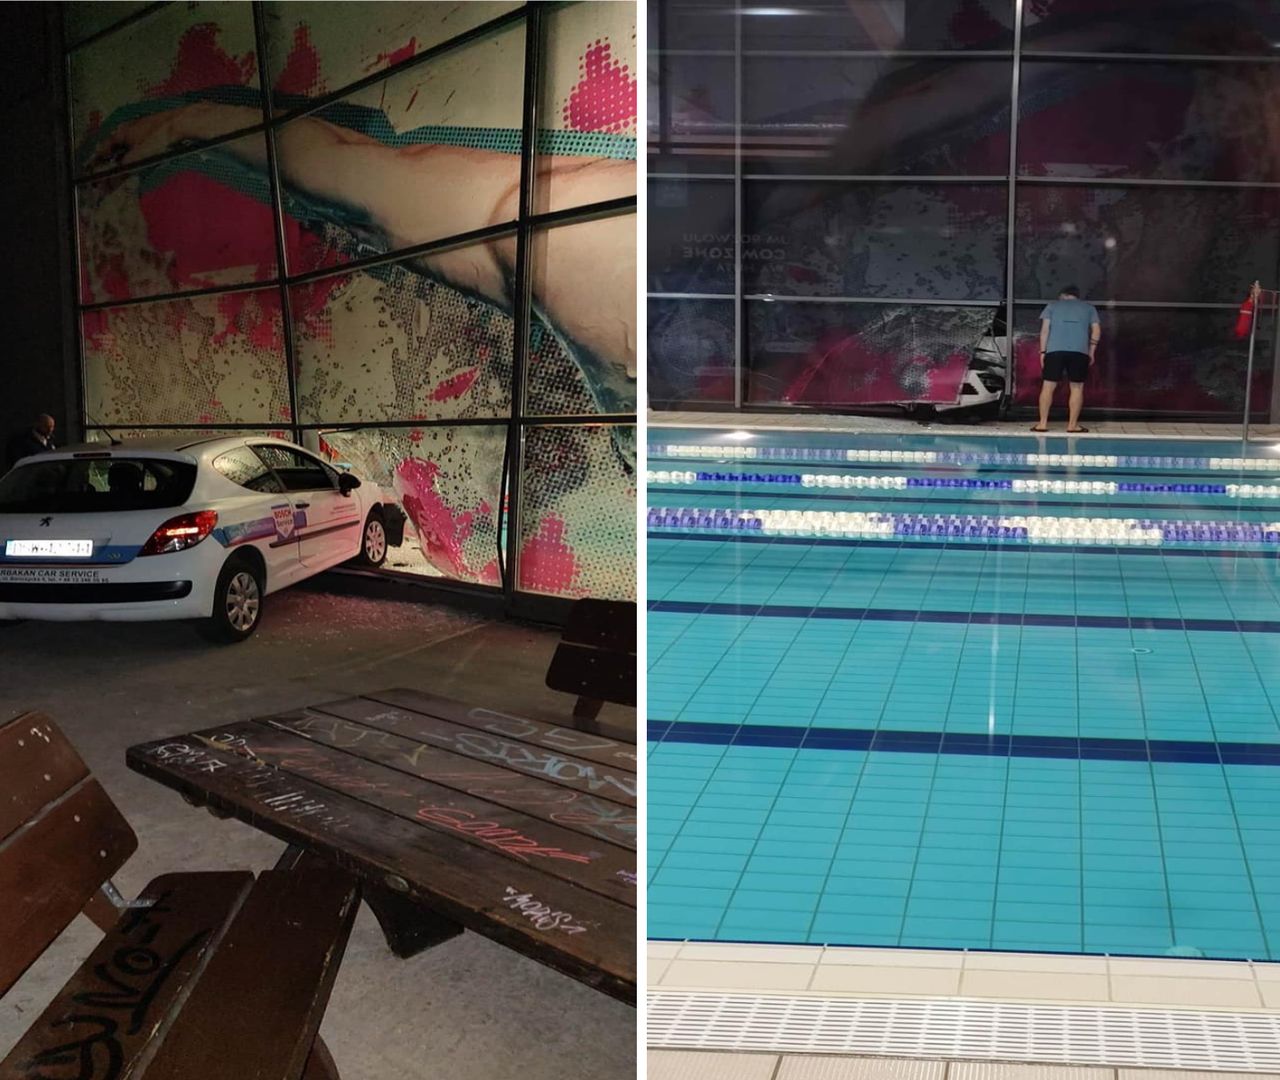 Samochód przebił szklaną ścianę i prawie wjechał do basenu. 28-latka chciała przeparkować